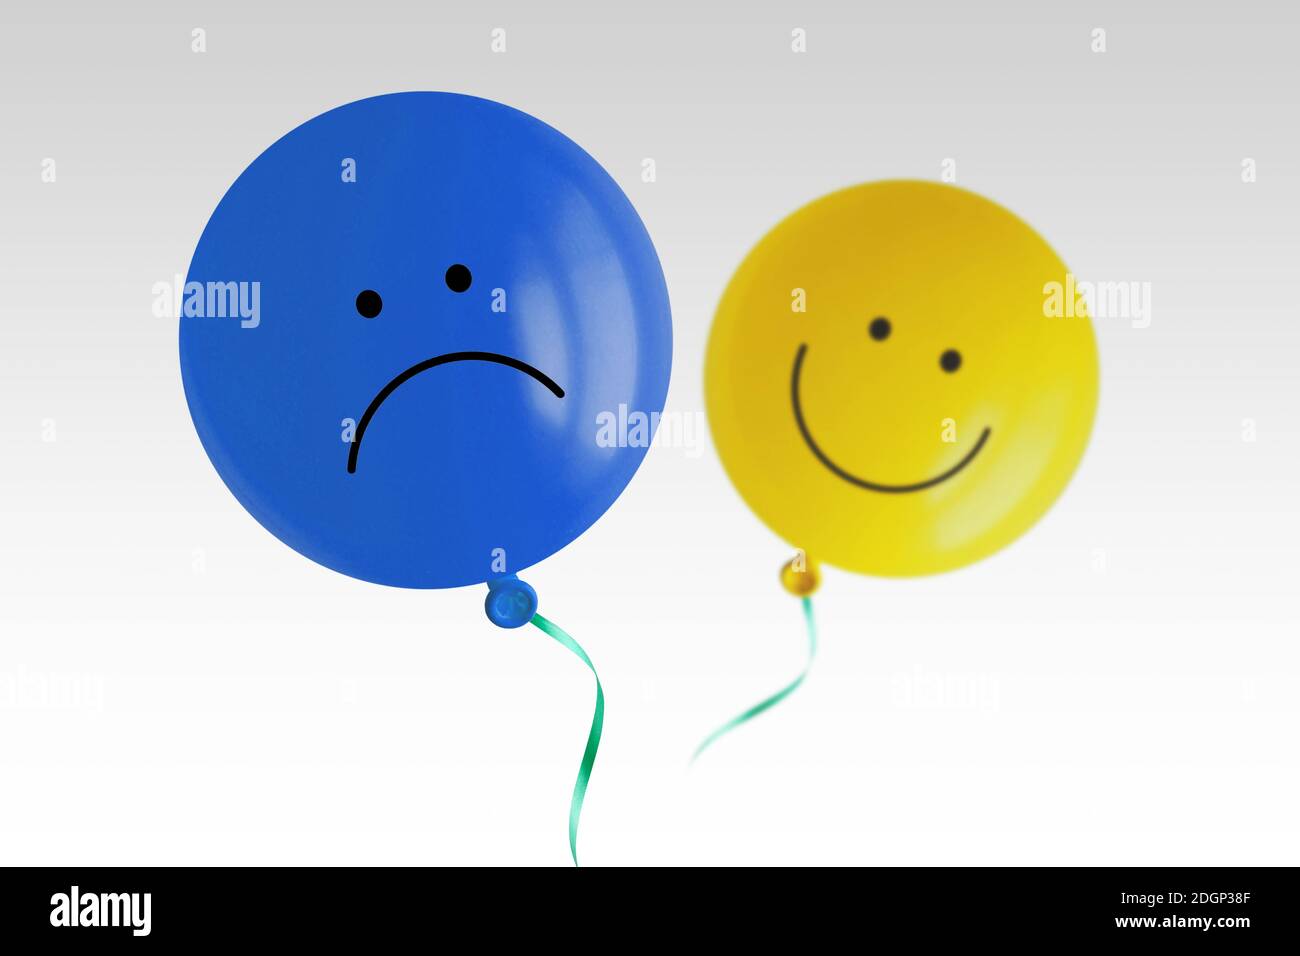 Blauer trauriger Ballon und gelber glücklicher Ballon fliegen fort Weißer Hintergrund - Prävalenz der negativen über positive Stimmung Konzept Stockfoto